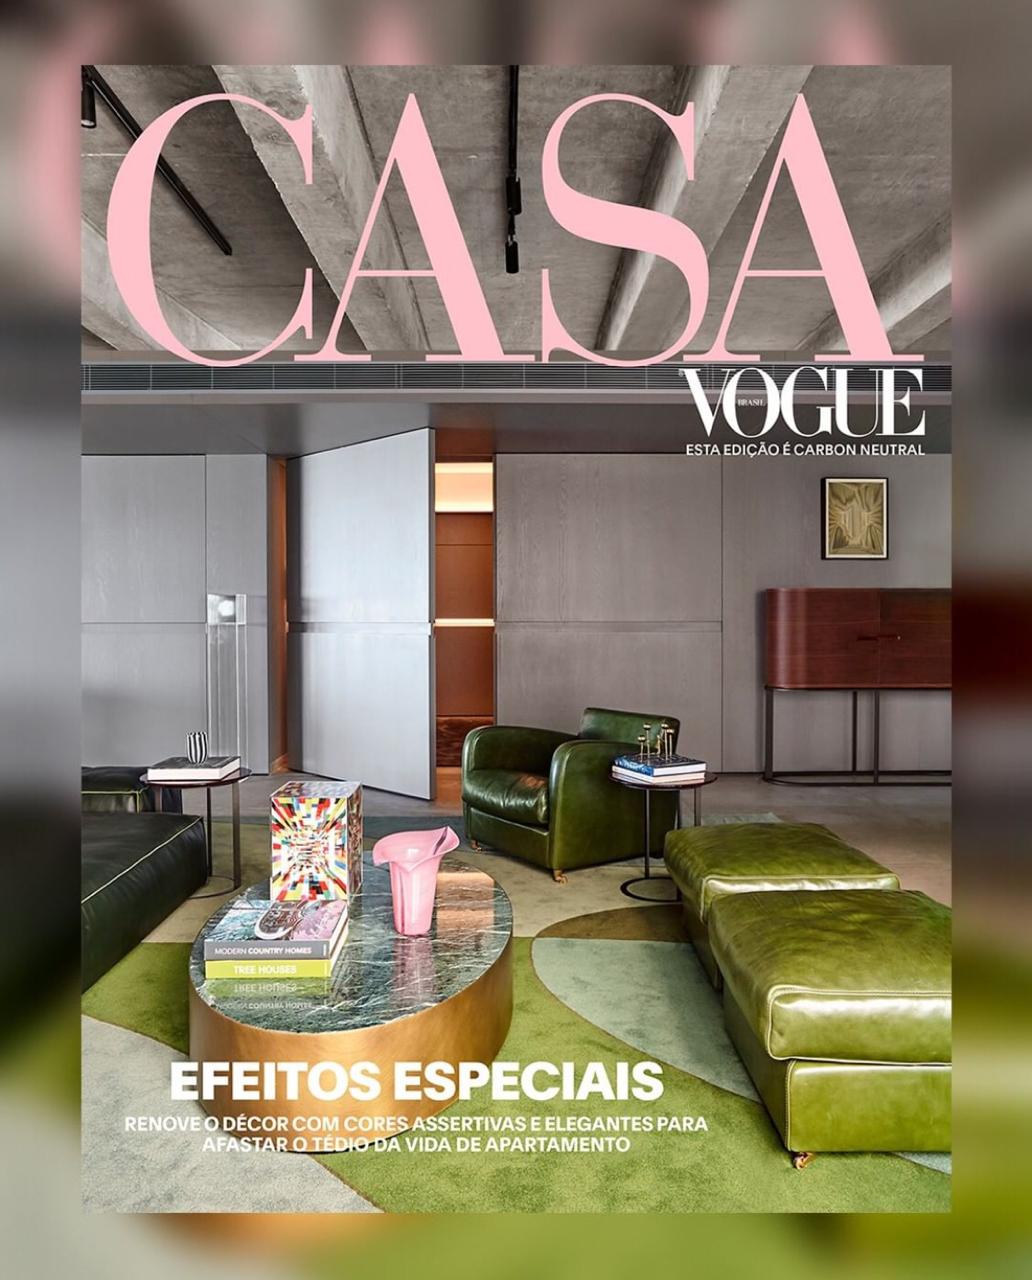 Projeto de David Bastos é capa da revista Casa Vogue de agosto